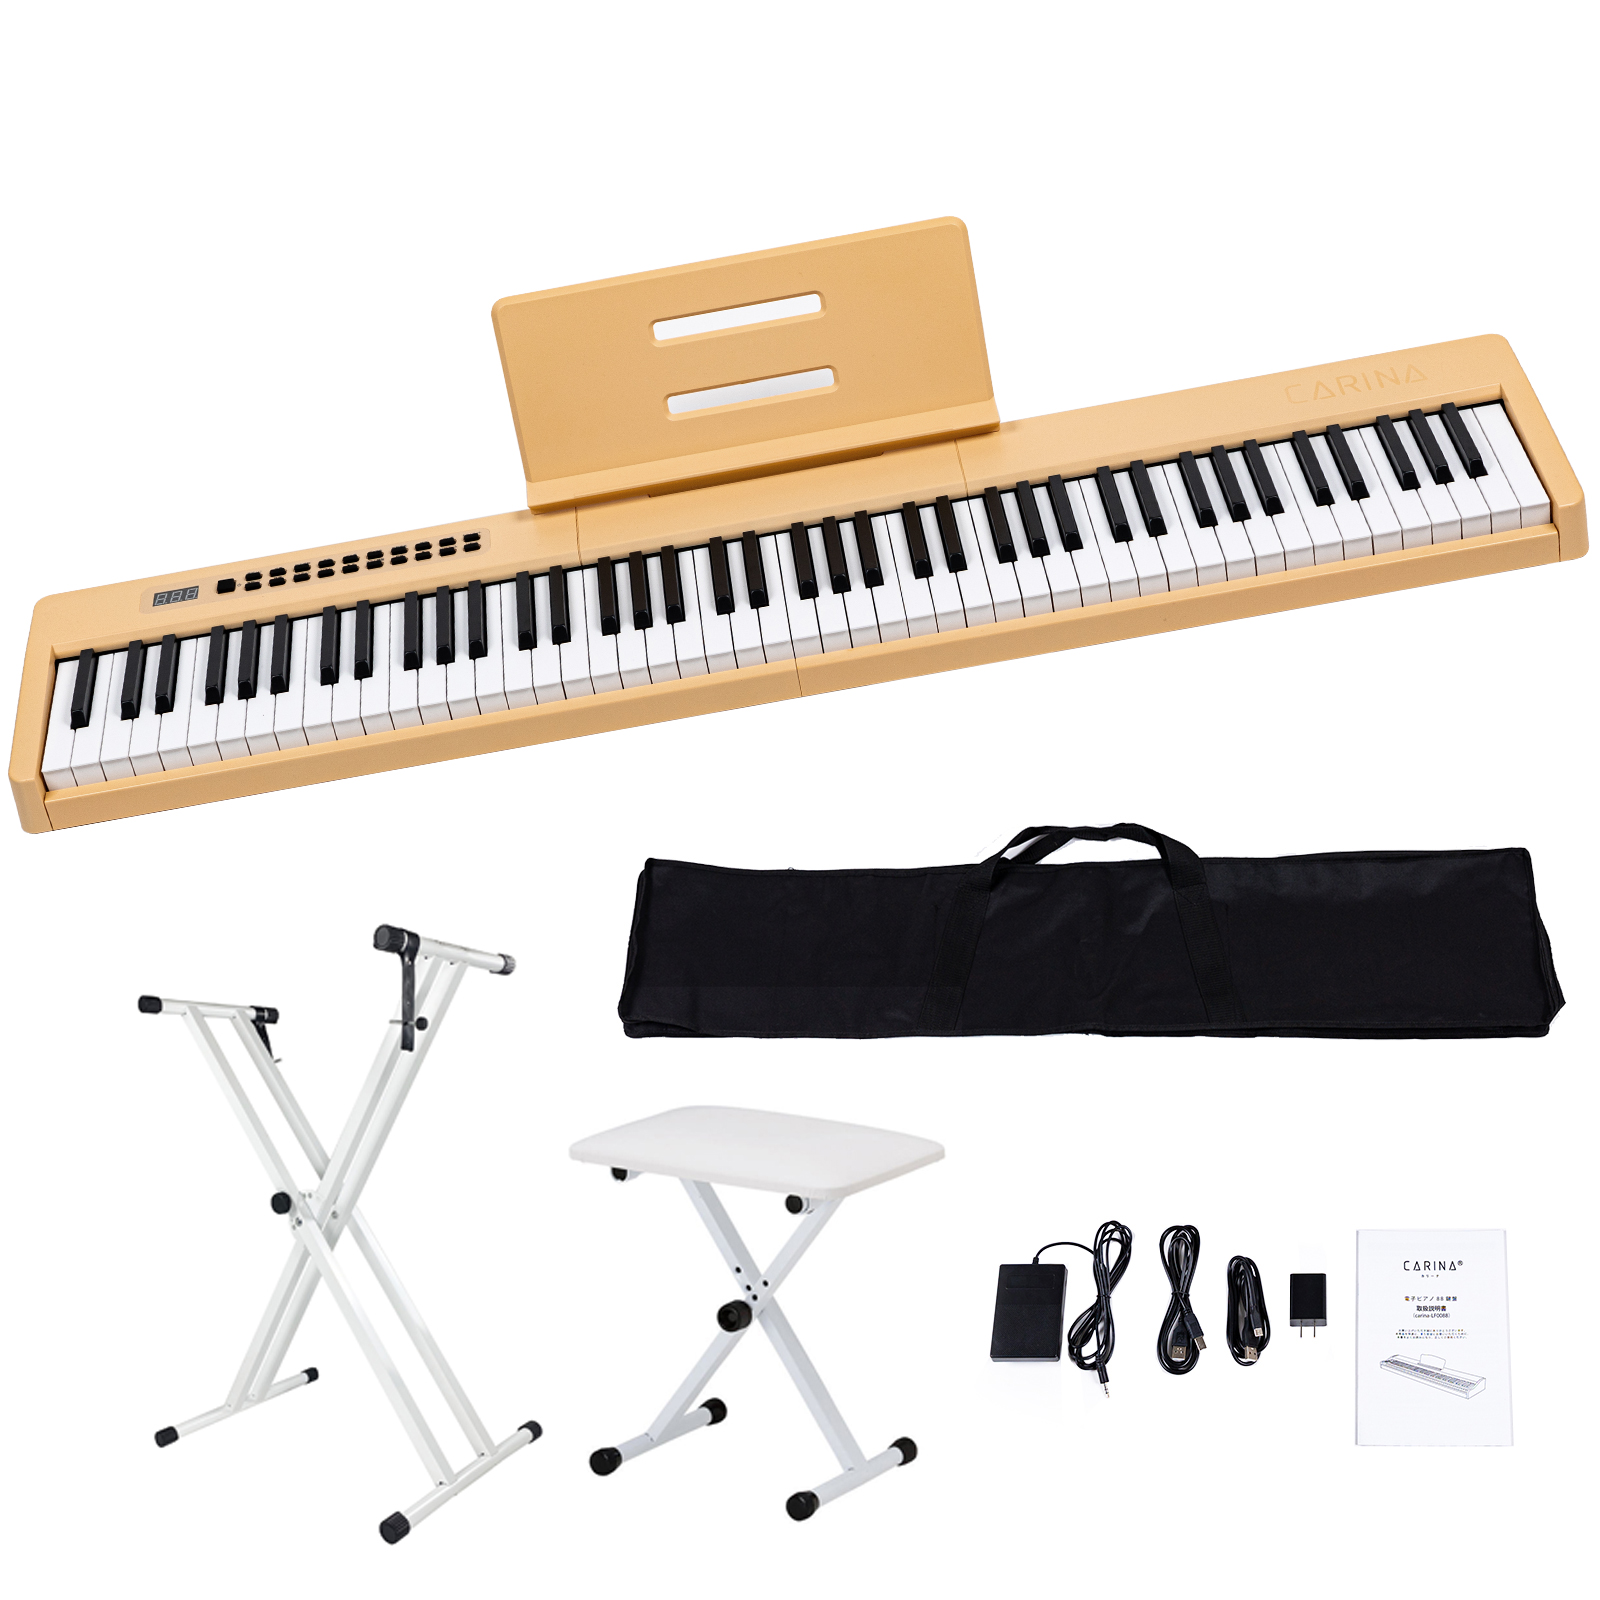 4カラー】電子ピアノ 88鍵盤 スタンド 椅子セット dream音源 充電可能 